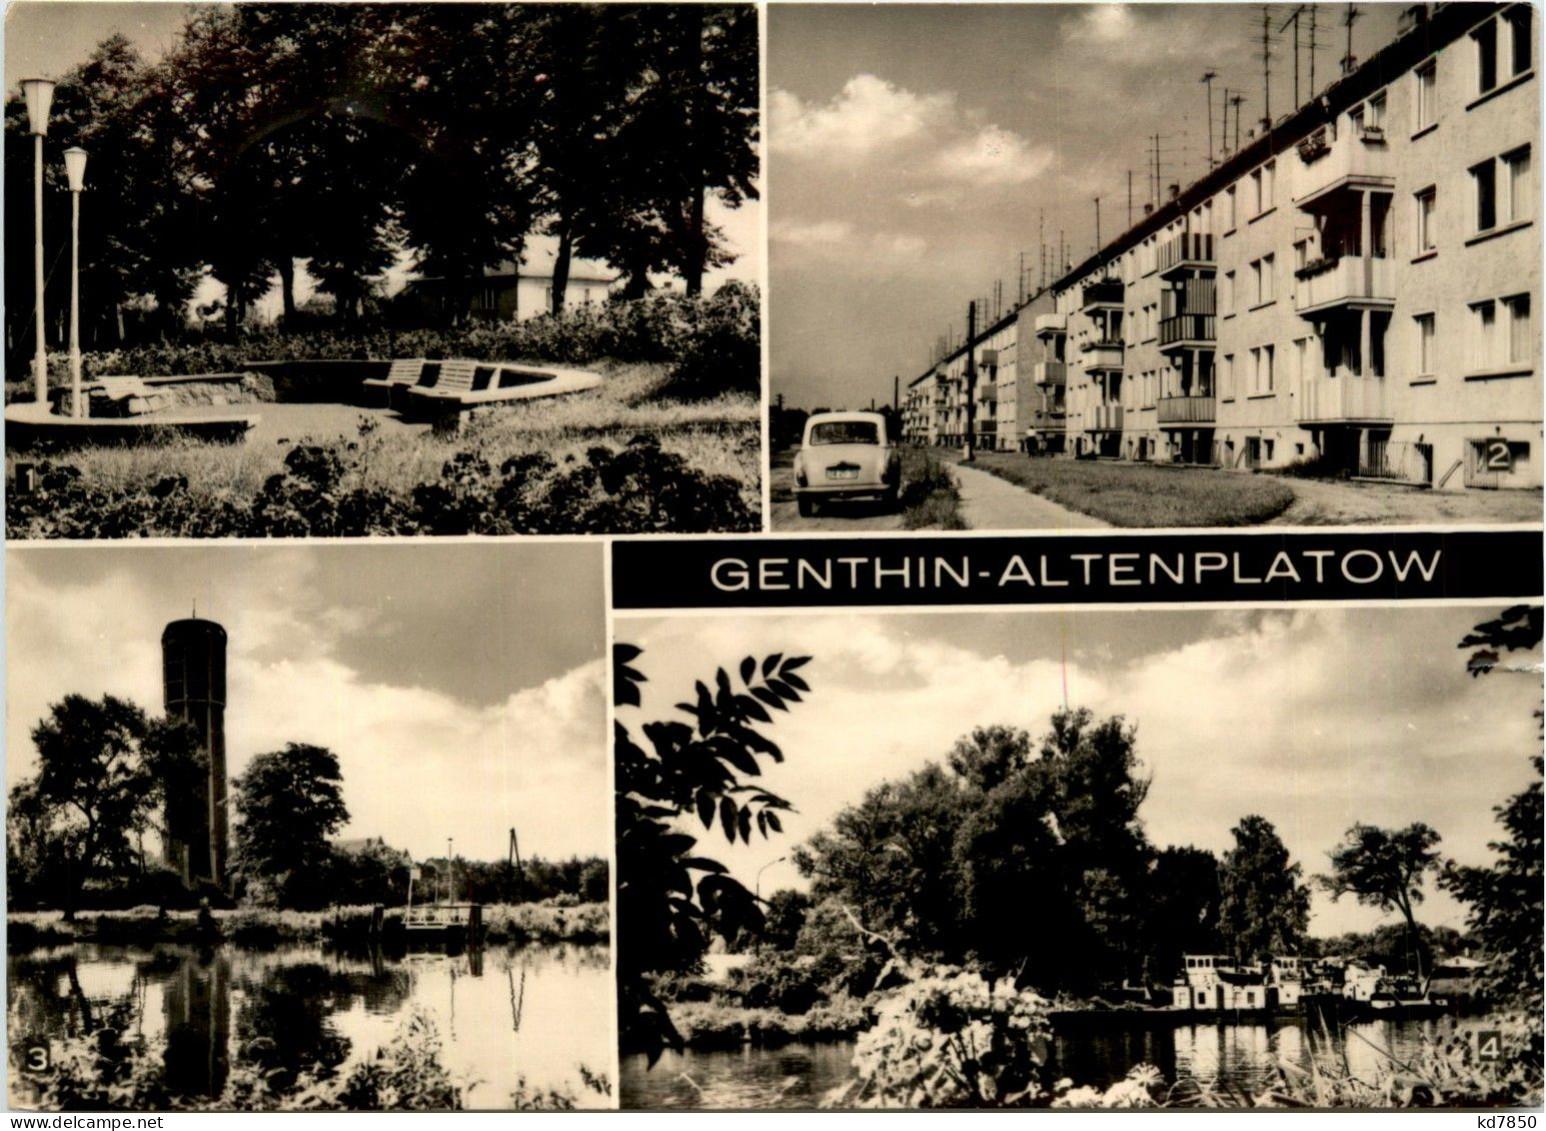 Genthin-Altenplatow - Genthin